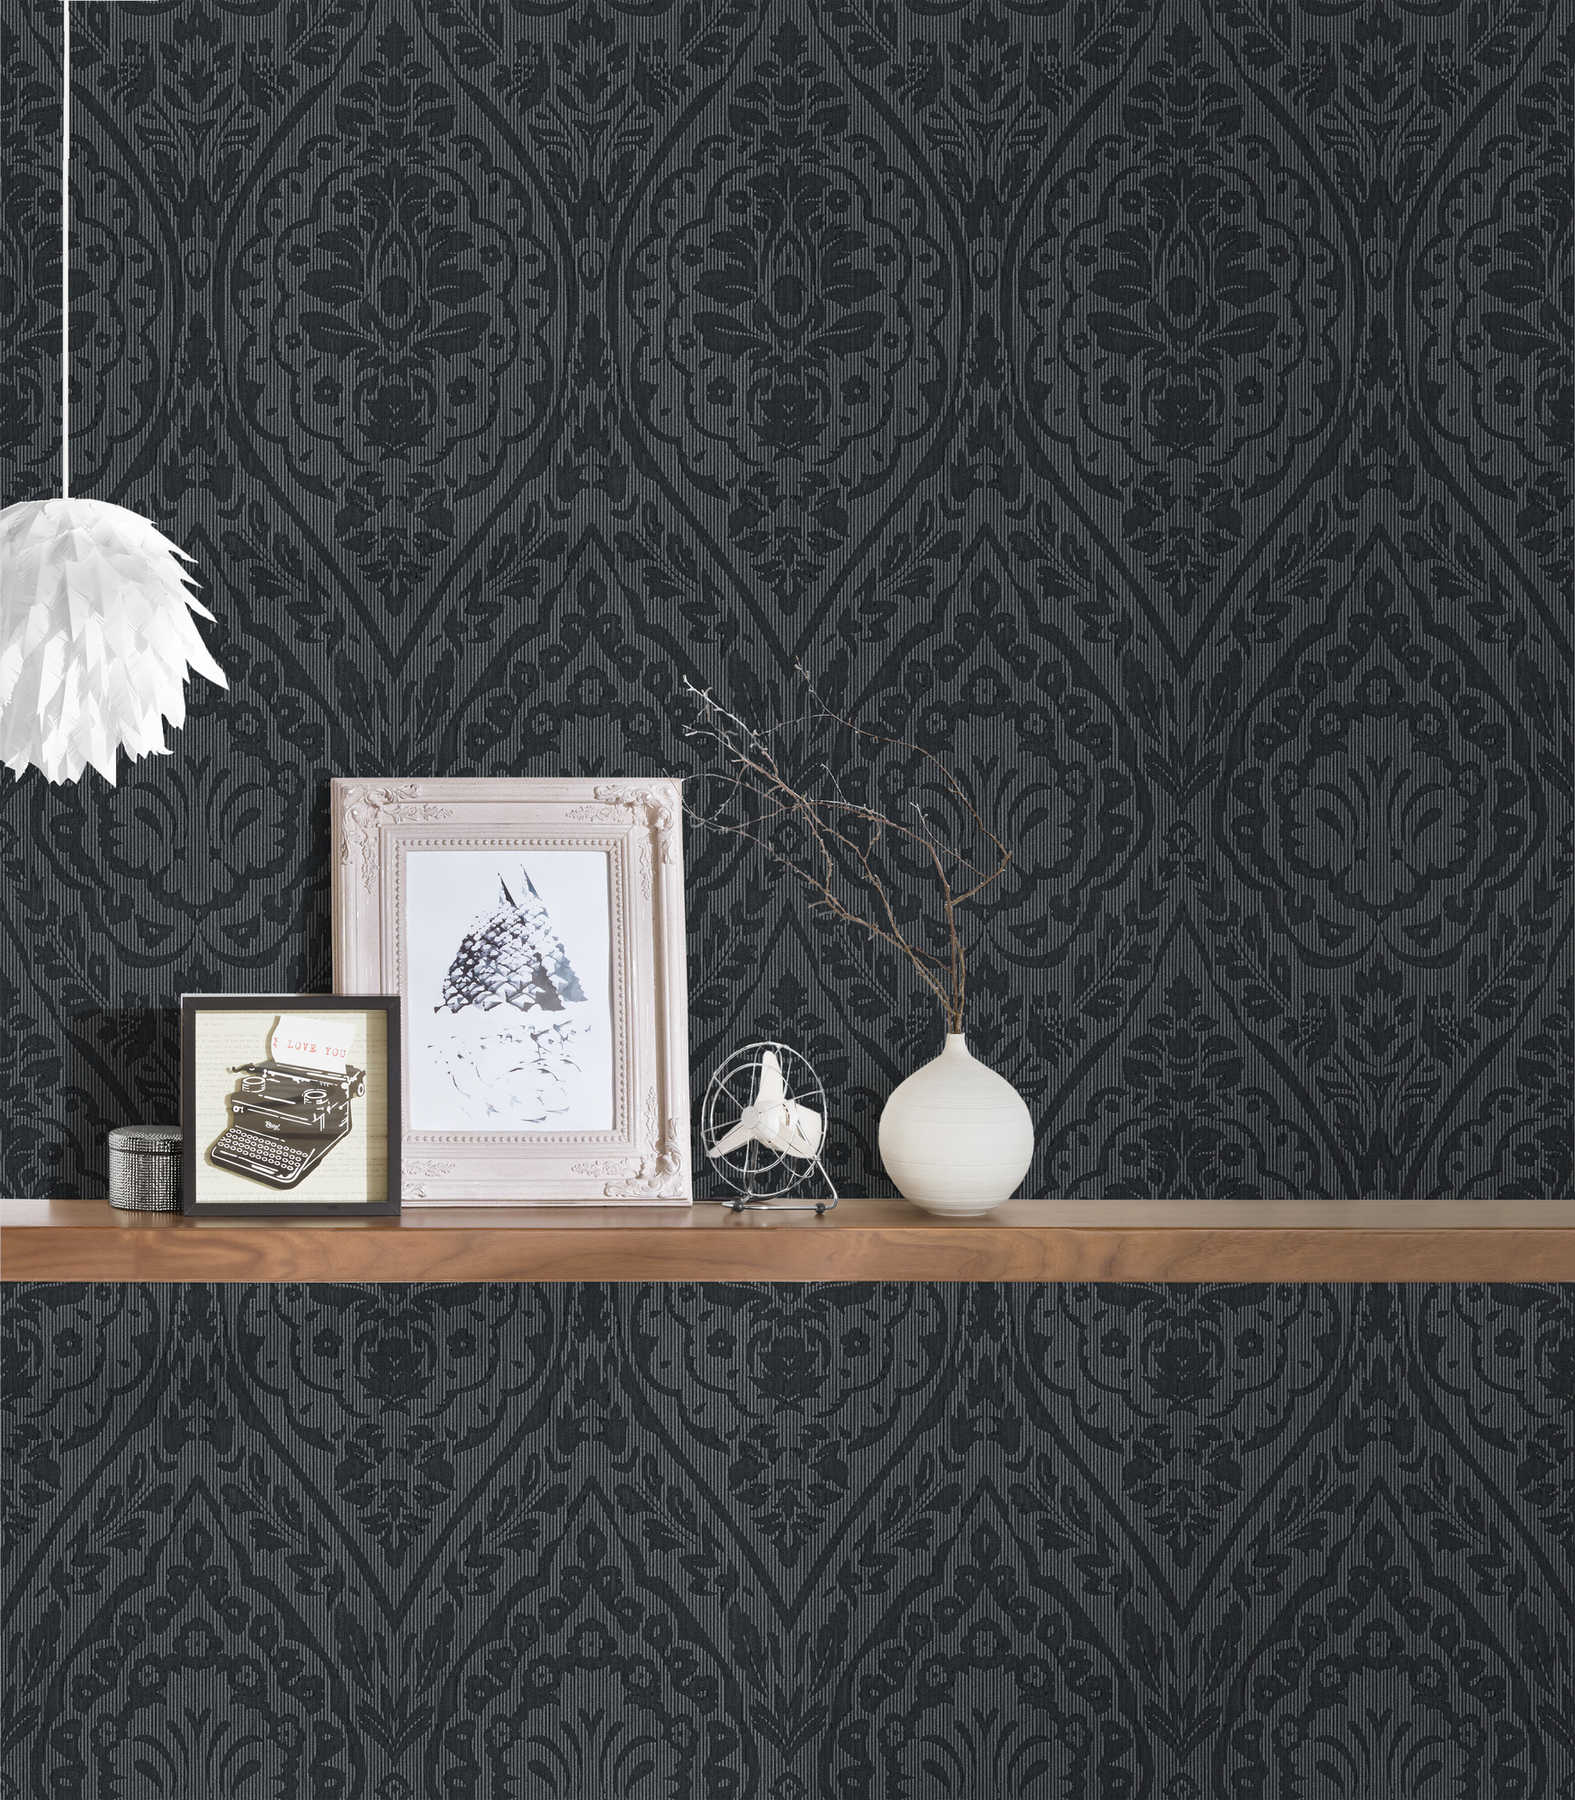             Florale Ornament Tapete im Kolonial Stil – Grau, Schwarz
        